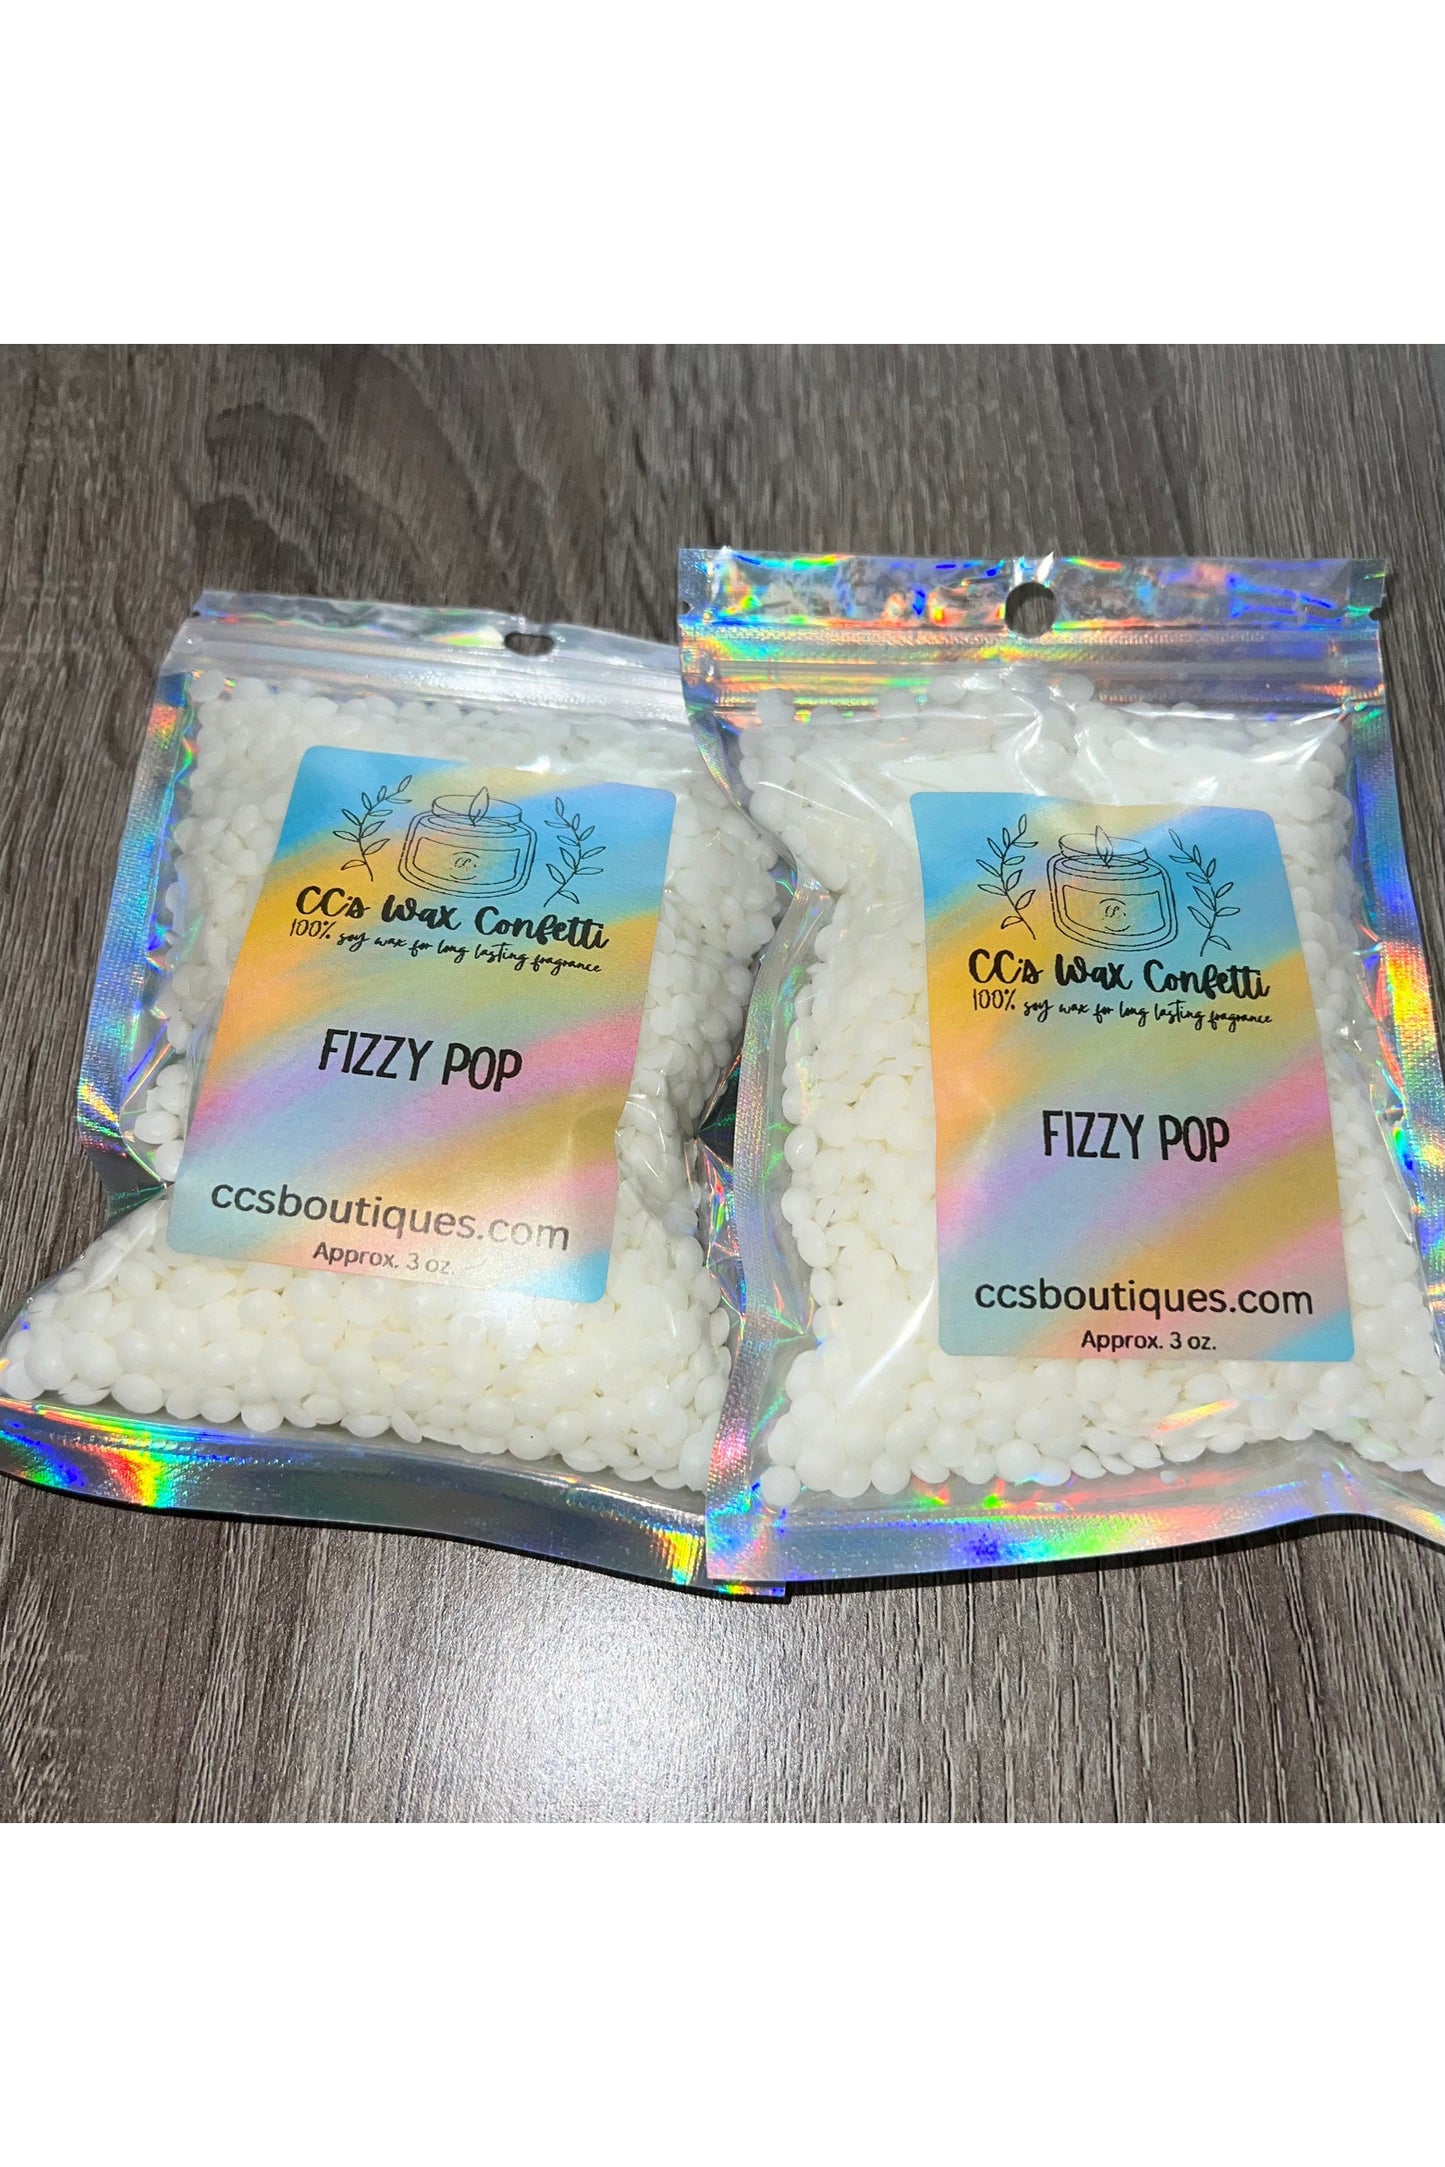 Fizzy Pop Confetti Wax Melts